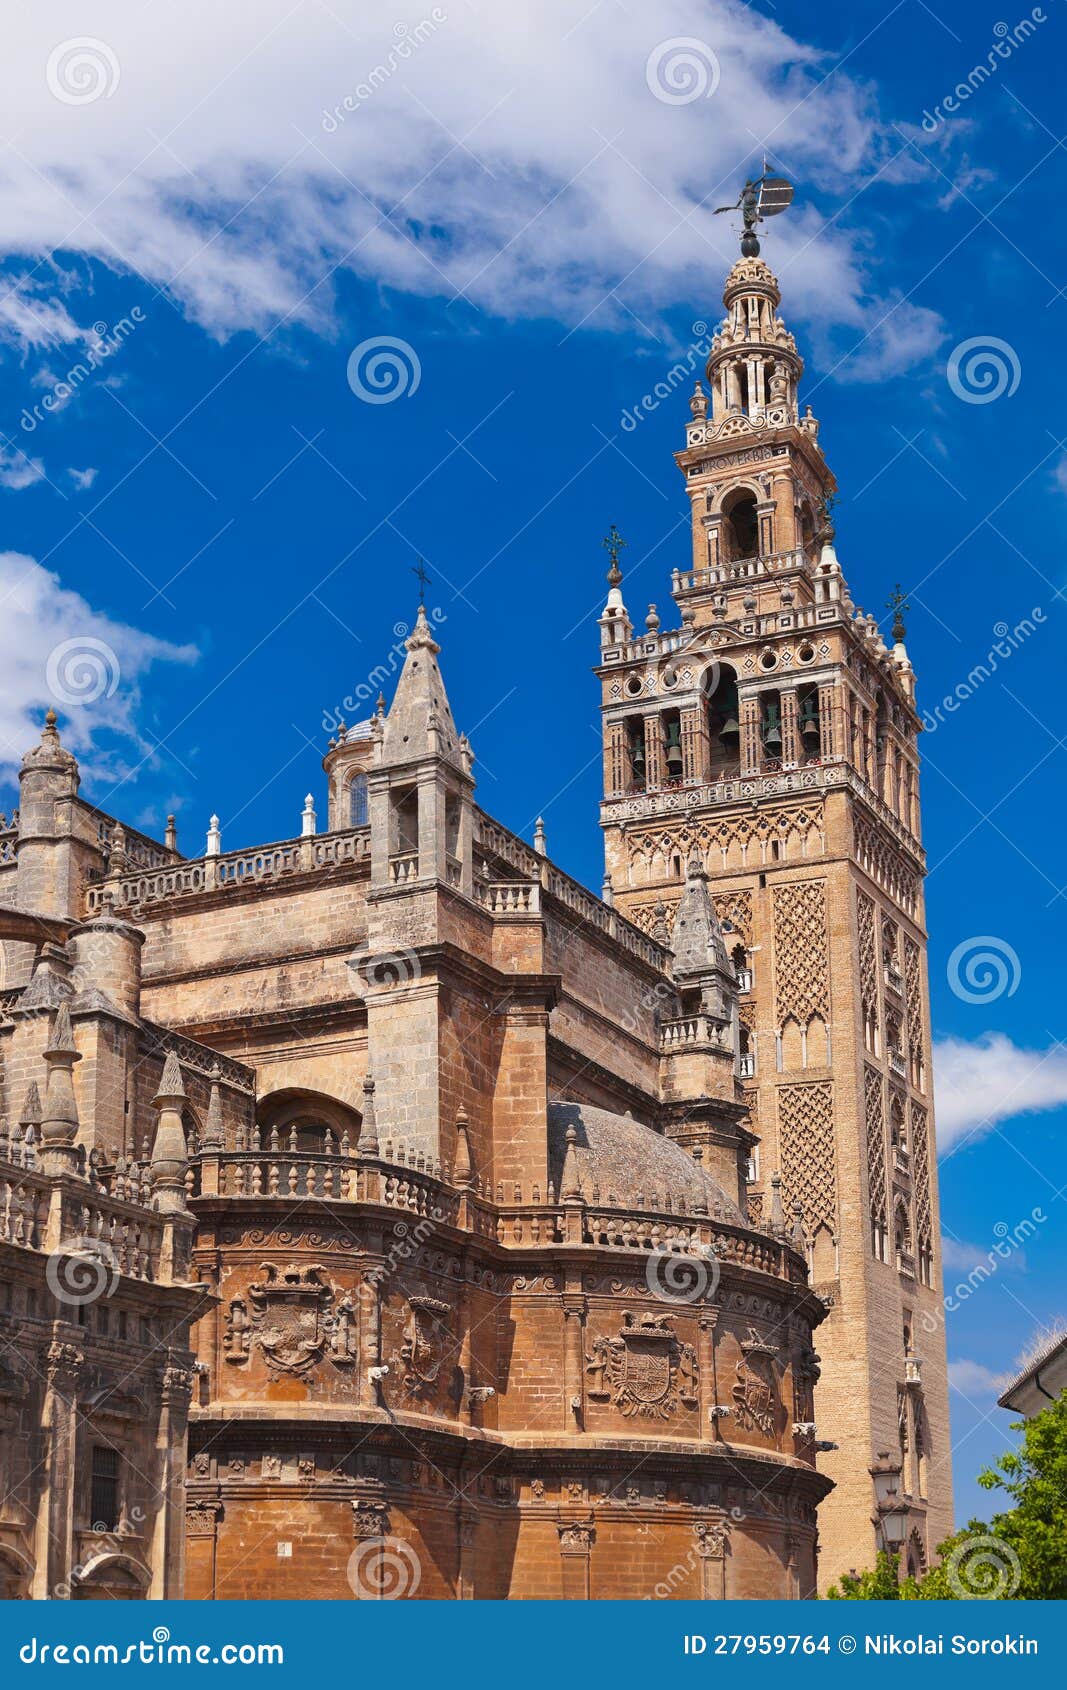 Cathedral La Giralda At Sevilla Spain Stock Photo - Image of ancient ...